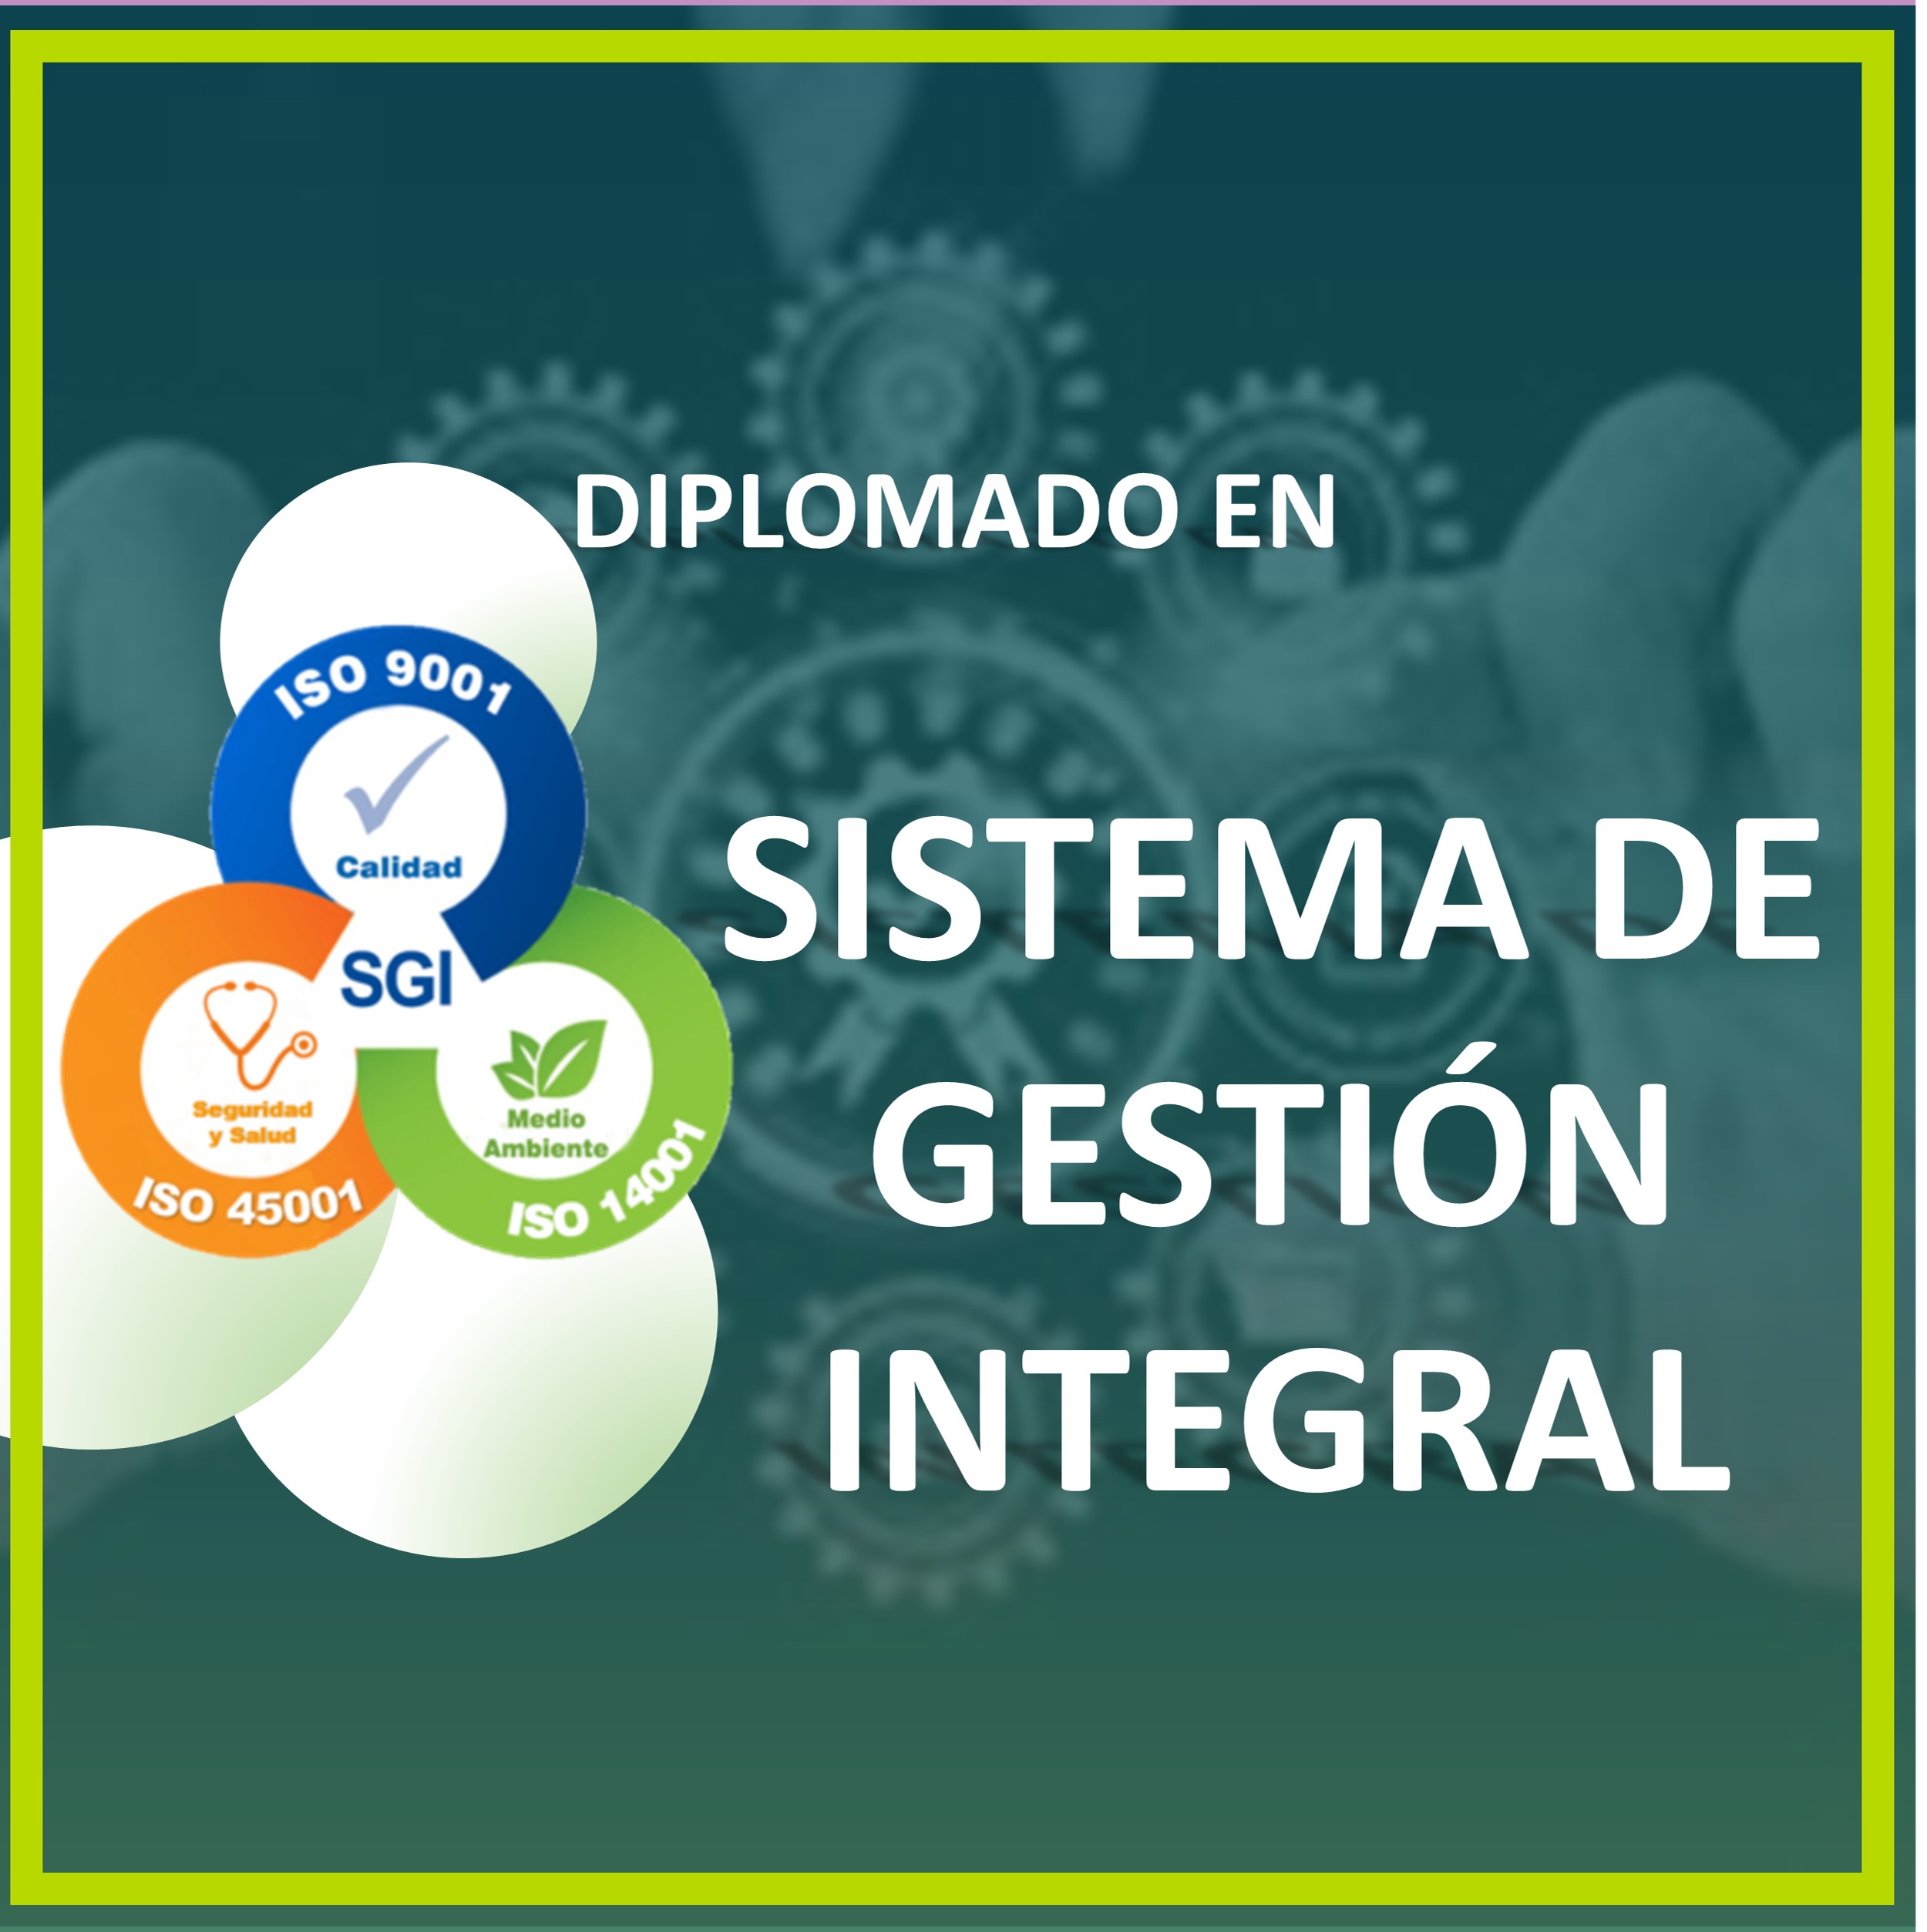 SISTEMA DE GESTIÓN INTEGRAL